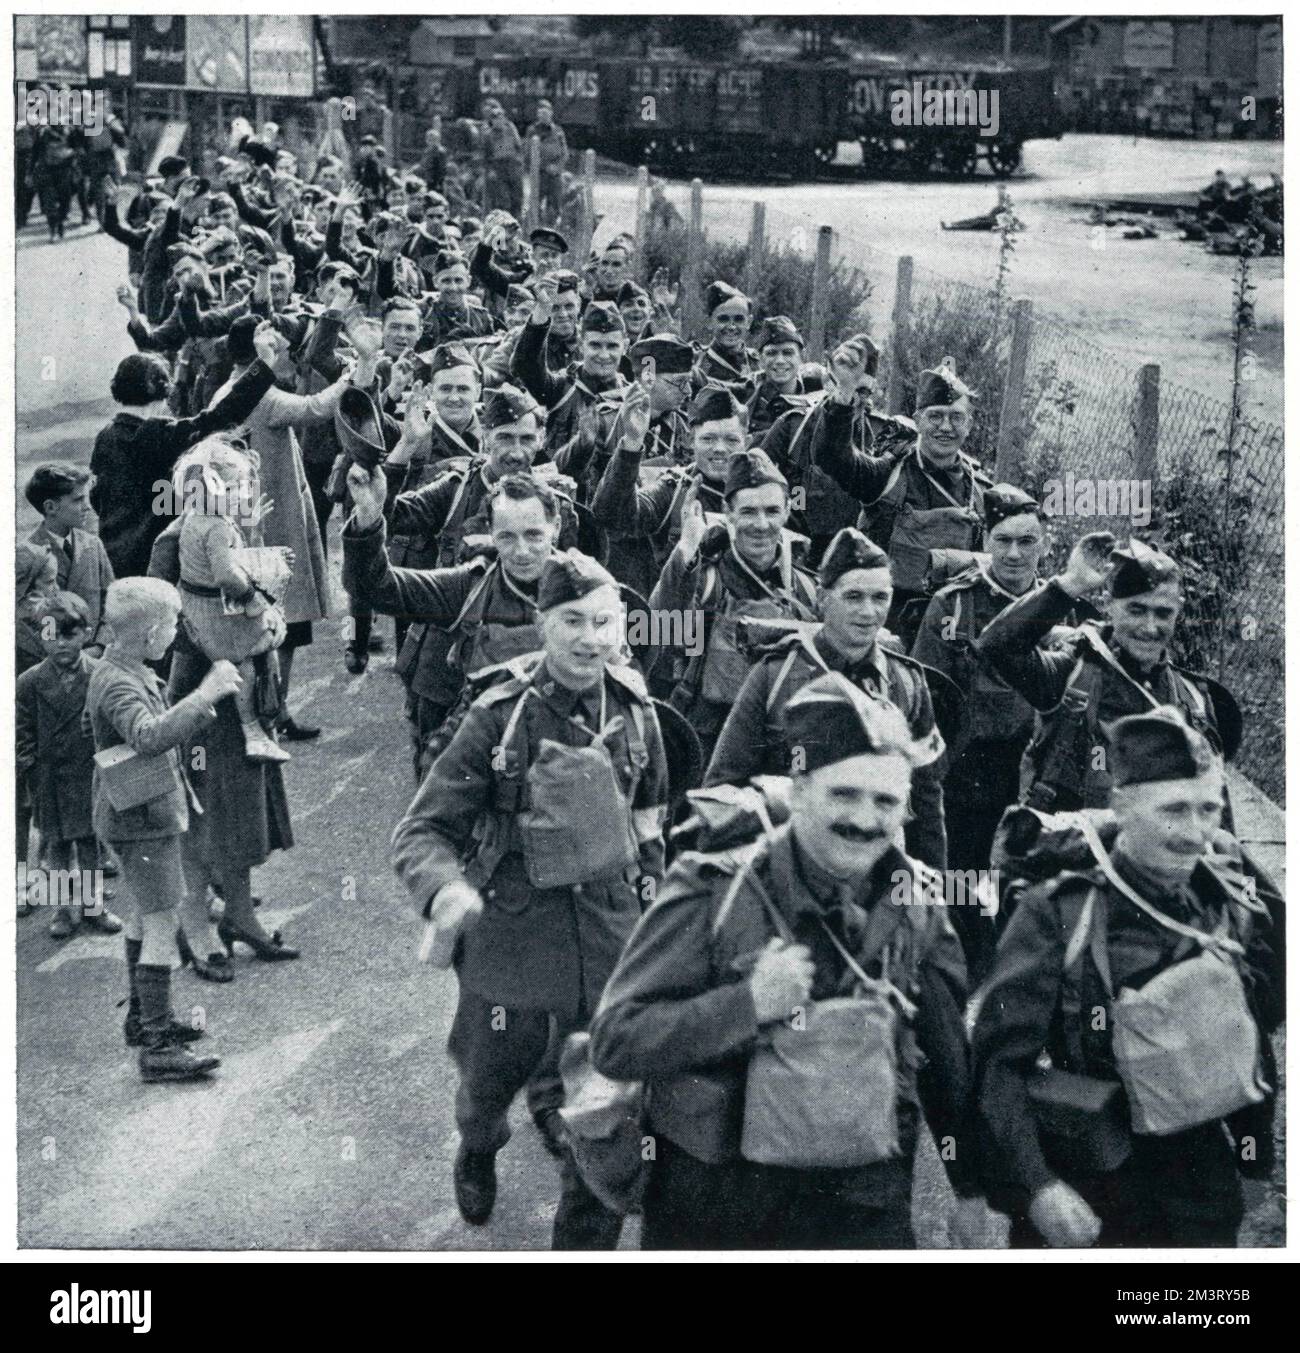 Britische Soldaten lächelten, als sie ihre Heimat zur Westfront verließen, ein paar Wochen nach dem Zweiten Weltkrieg. Frauen und Kinder winken, während die Männer durchmarschieren, von denen einige ihre Hüte mit Salut erheben. Datum: 1939 Stockfoto